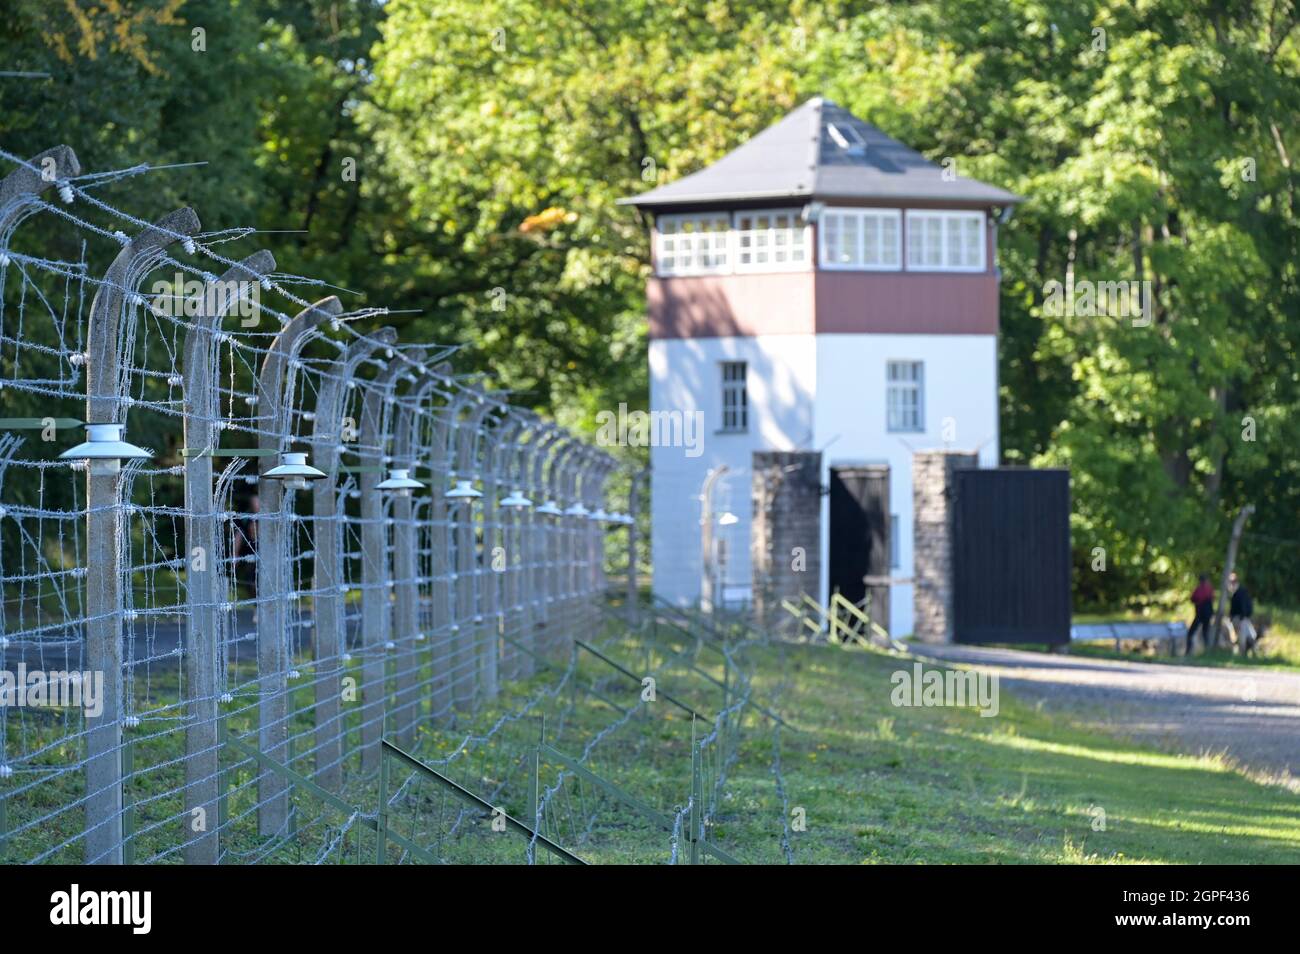 GERMANIA, Weimar, campo di concentramento nazista Buchenwald 1937-1945 / DEUTSCHLAND, Weimar, Konzentrationslager KZ Buchenwald, war eines der größten Konzentrationslager auf deutschem Boden. Es wurde zwischen Juli 1937 und April 1945 auf dem Ettersberg bei Weimar von der SS betrieben Foto Stock